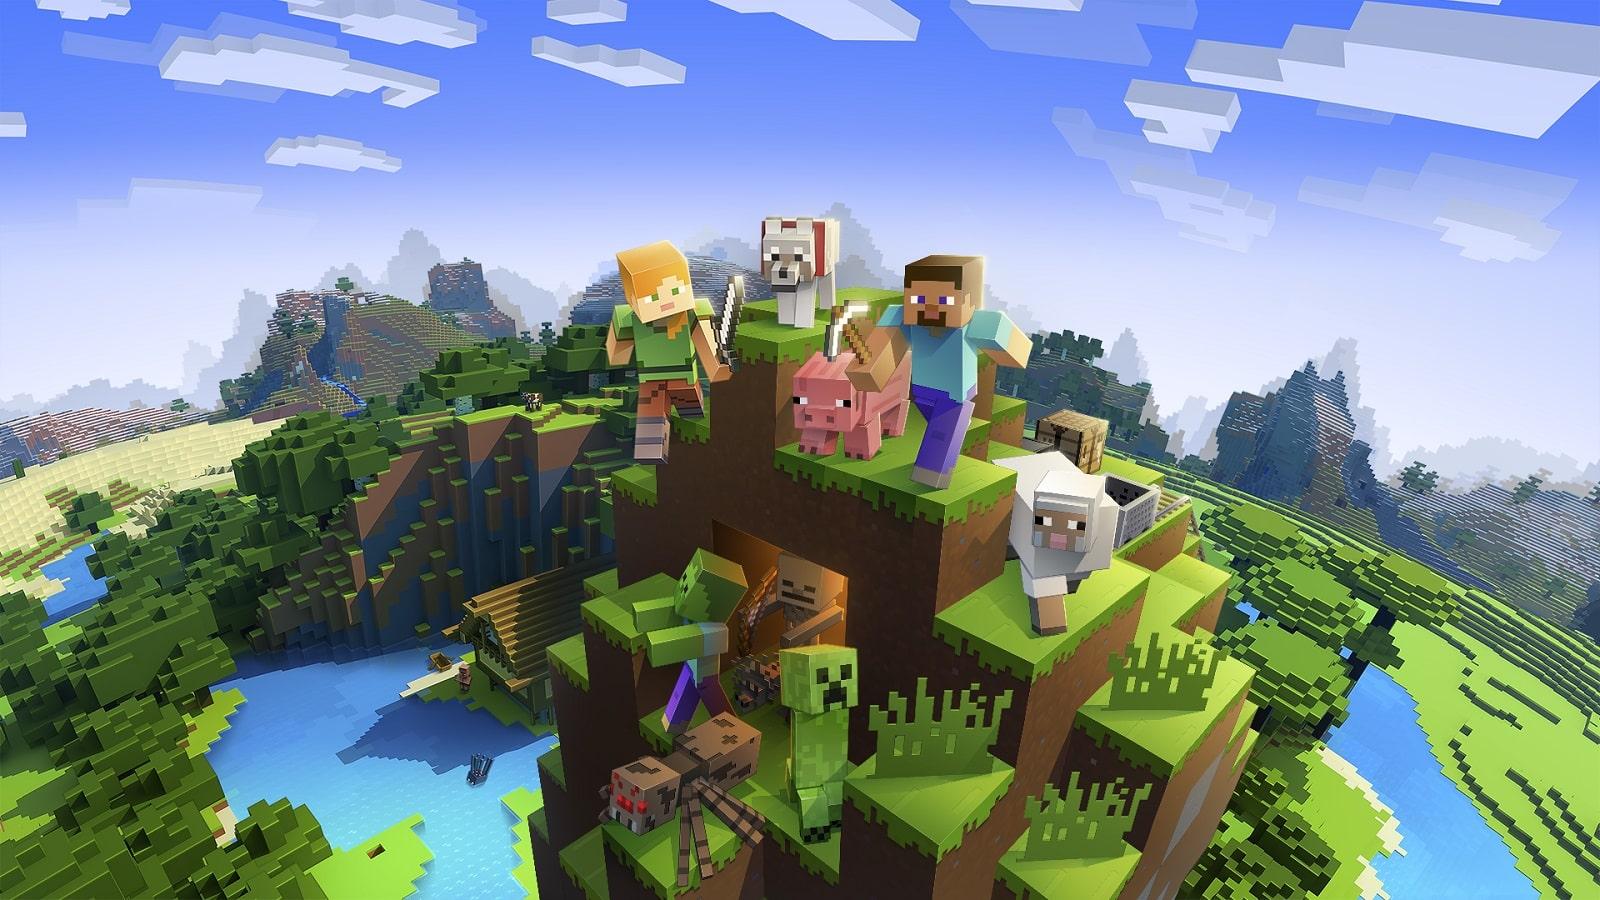 Official cover art for Minecraft, a cross-platform sandbox game.